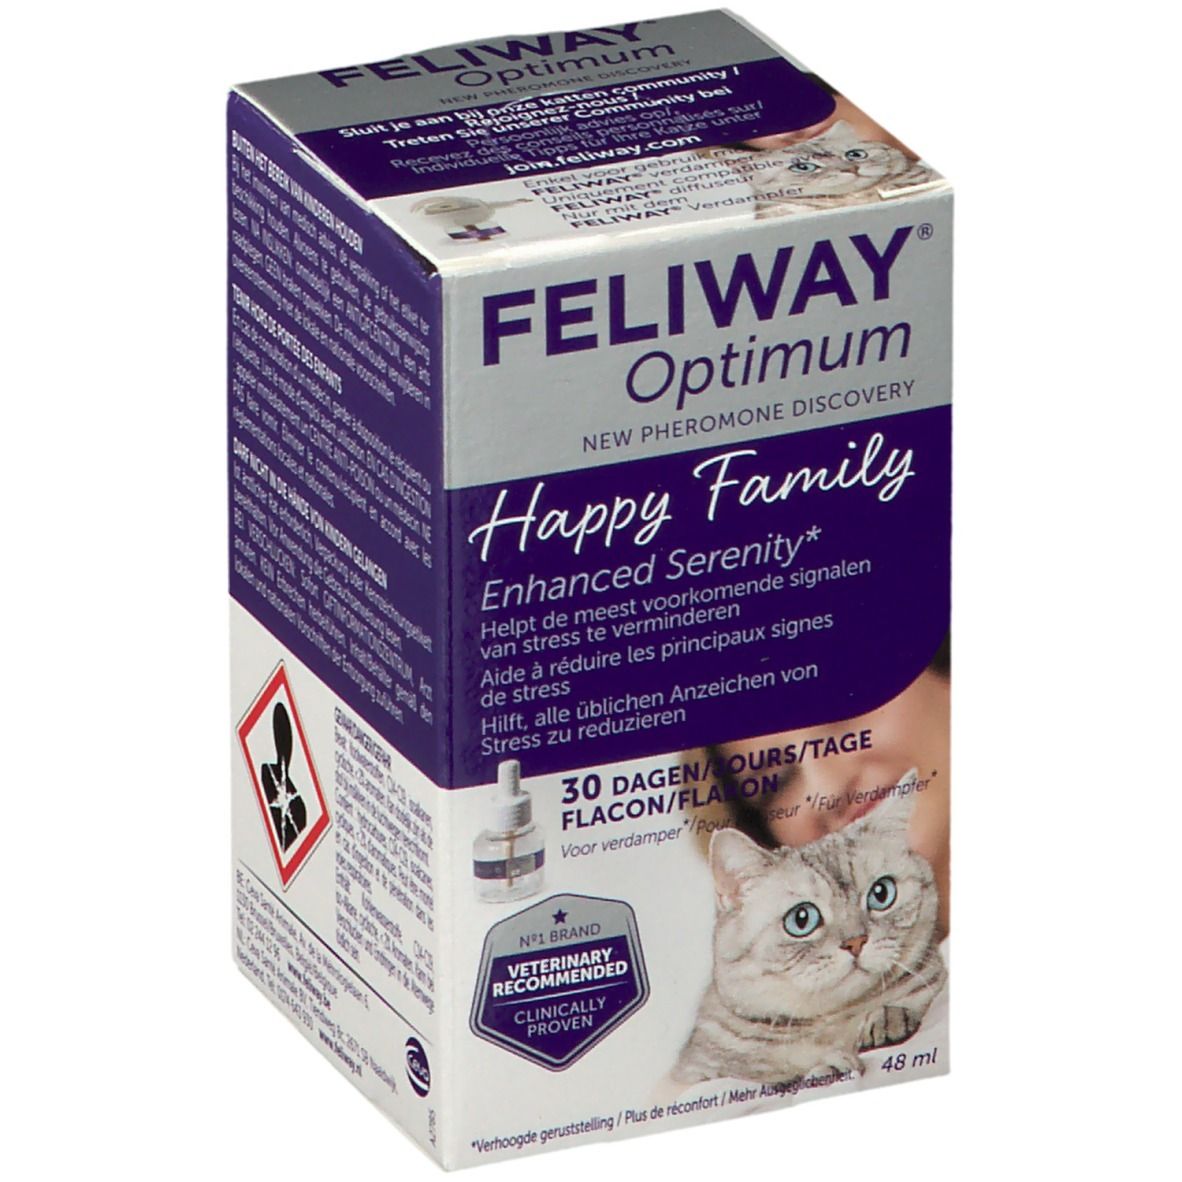 FELIWAY Optimum, développé pour le bien-être pour chat - FELIWAY France